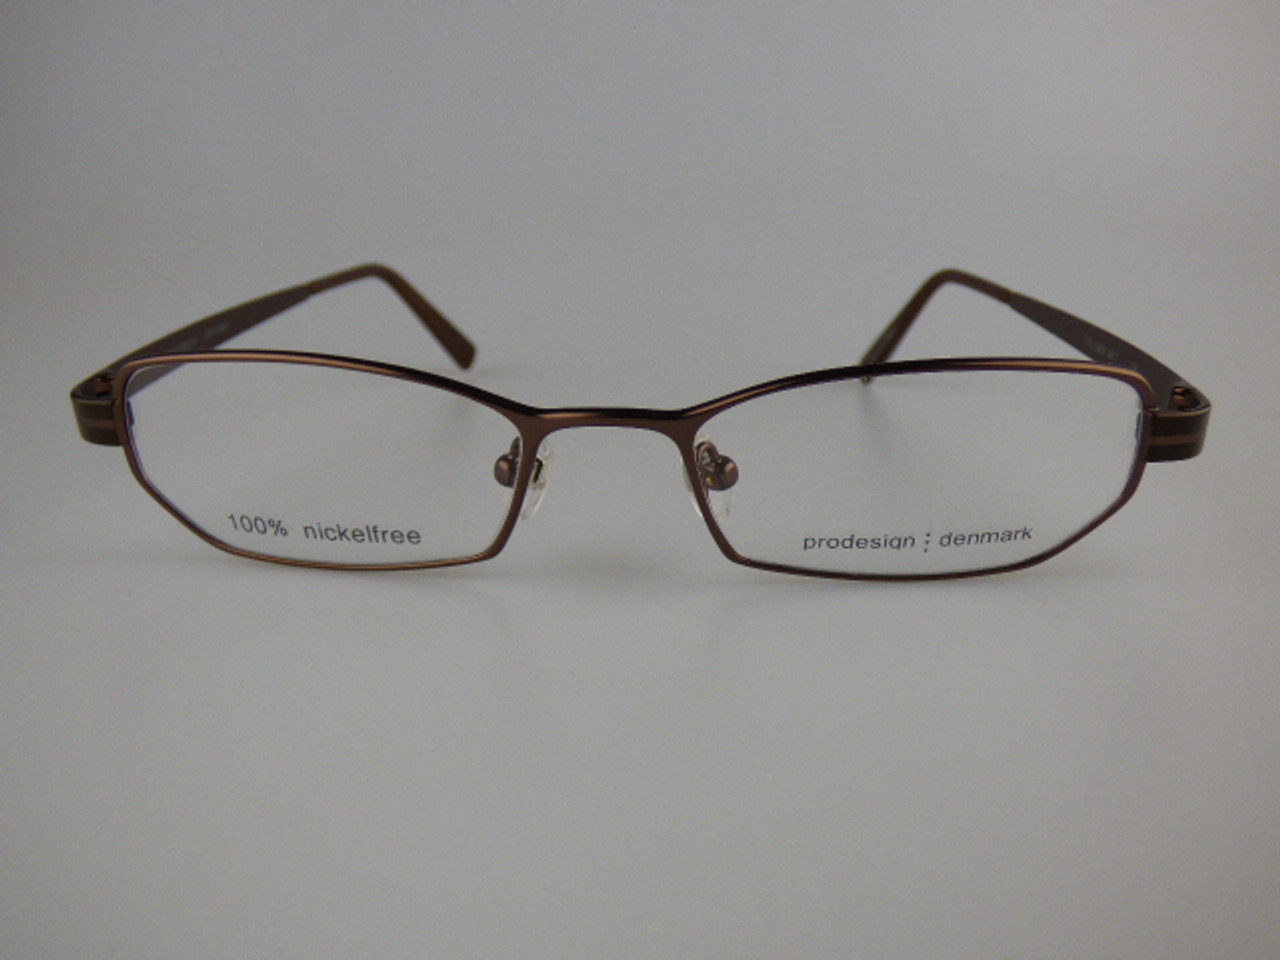 Prodesign Denmark Eyeglass frame model 1172 - Eyeglassframes4less.com